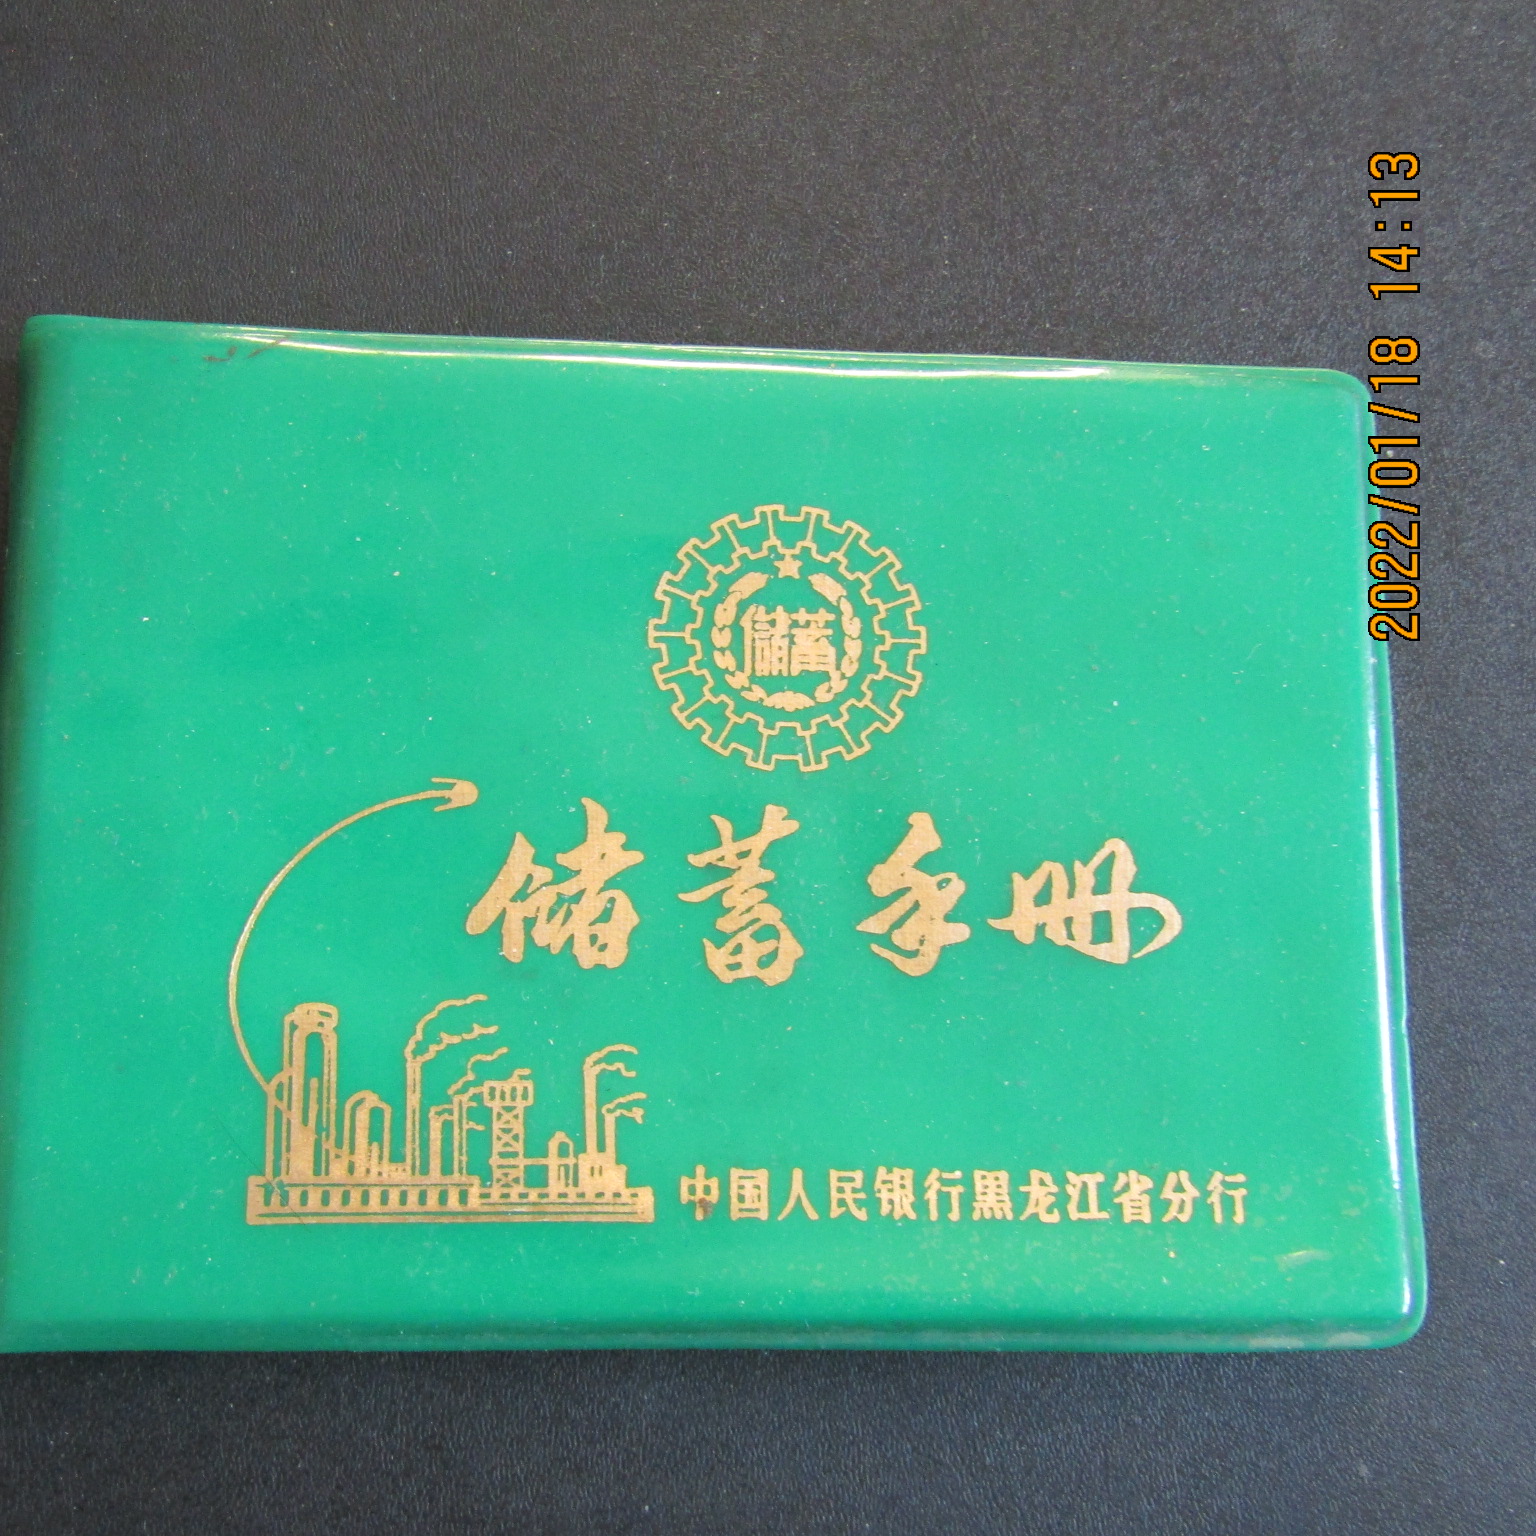 1978年 中国人民银行塑皮72开本储蓄手册 内有主席题词 新无字